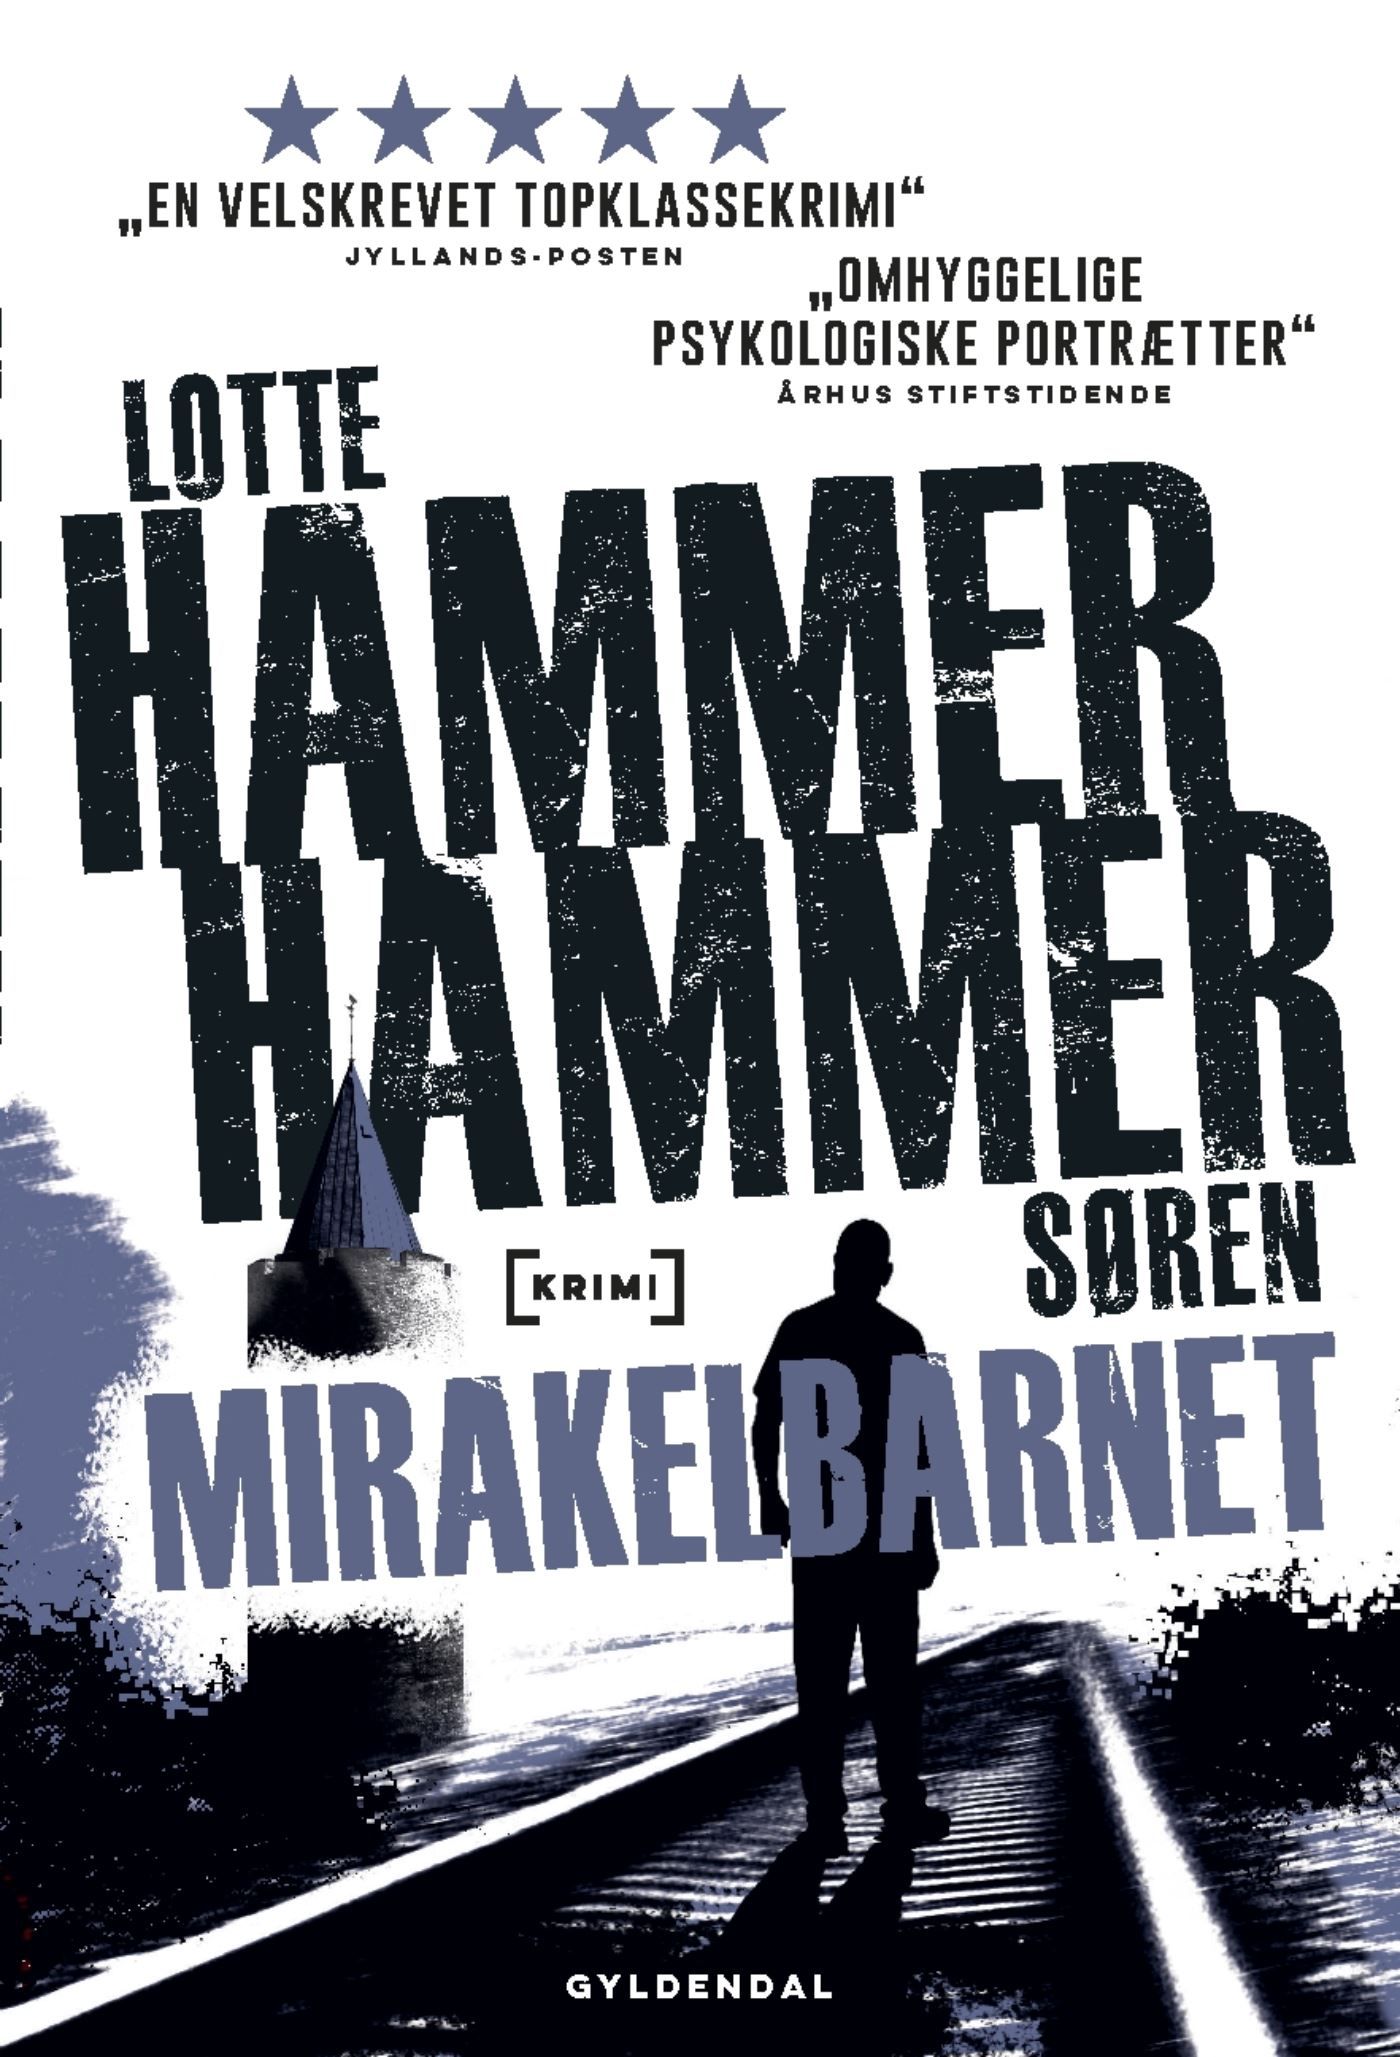 Mirakelbarnet, audiobook by Lotte og Søren Hammer